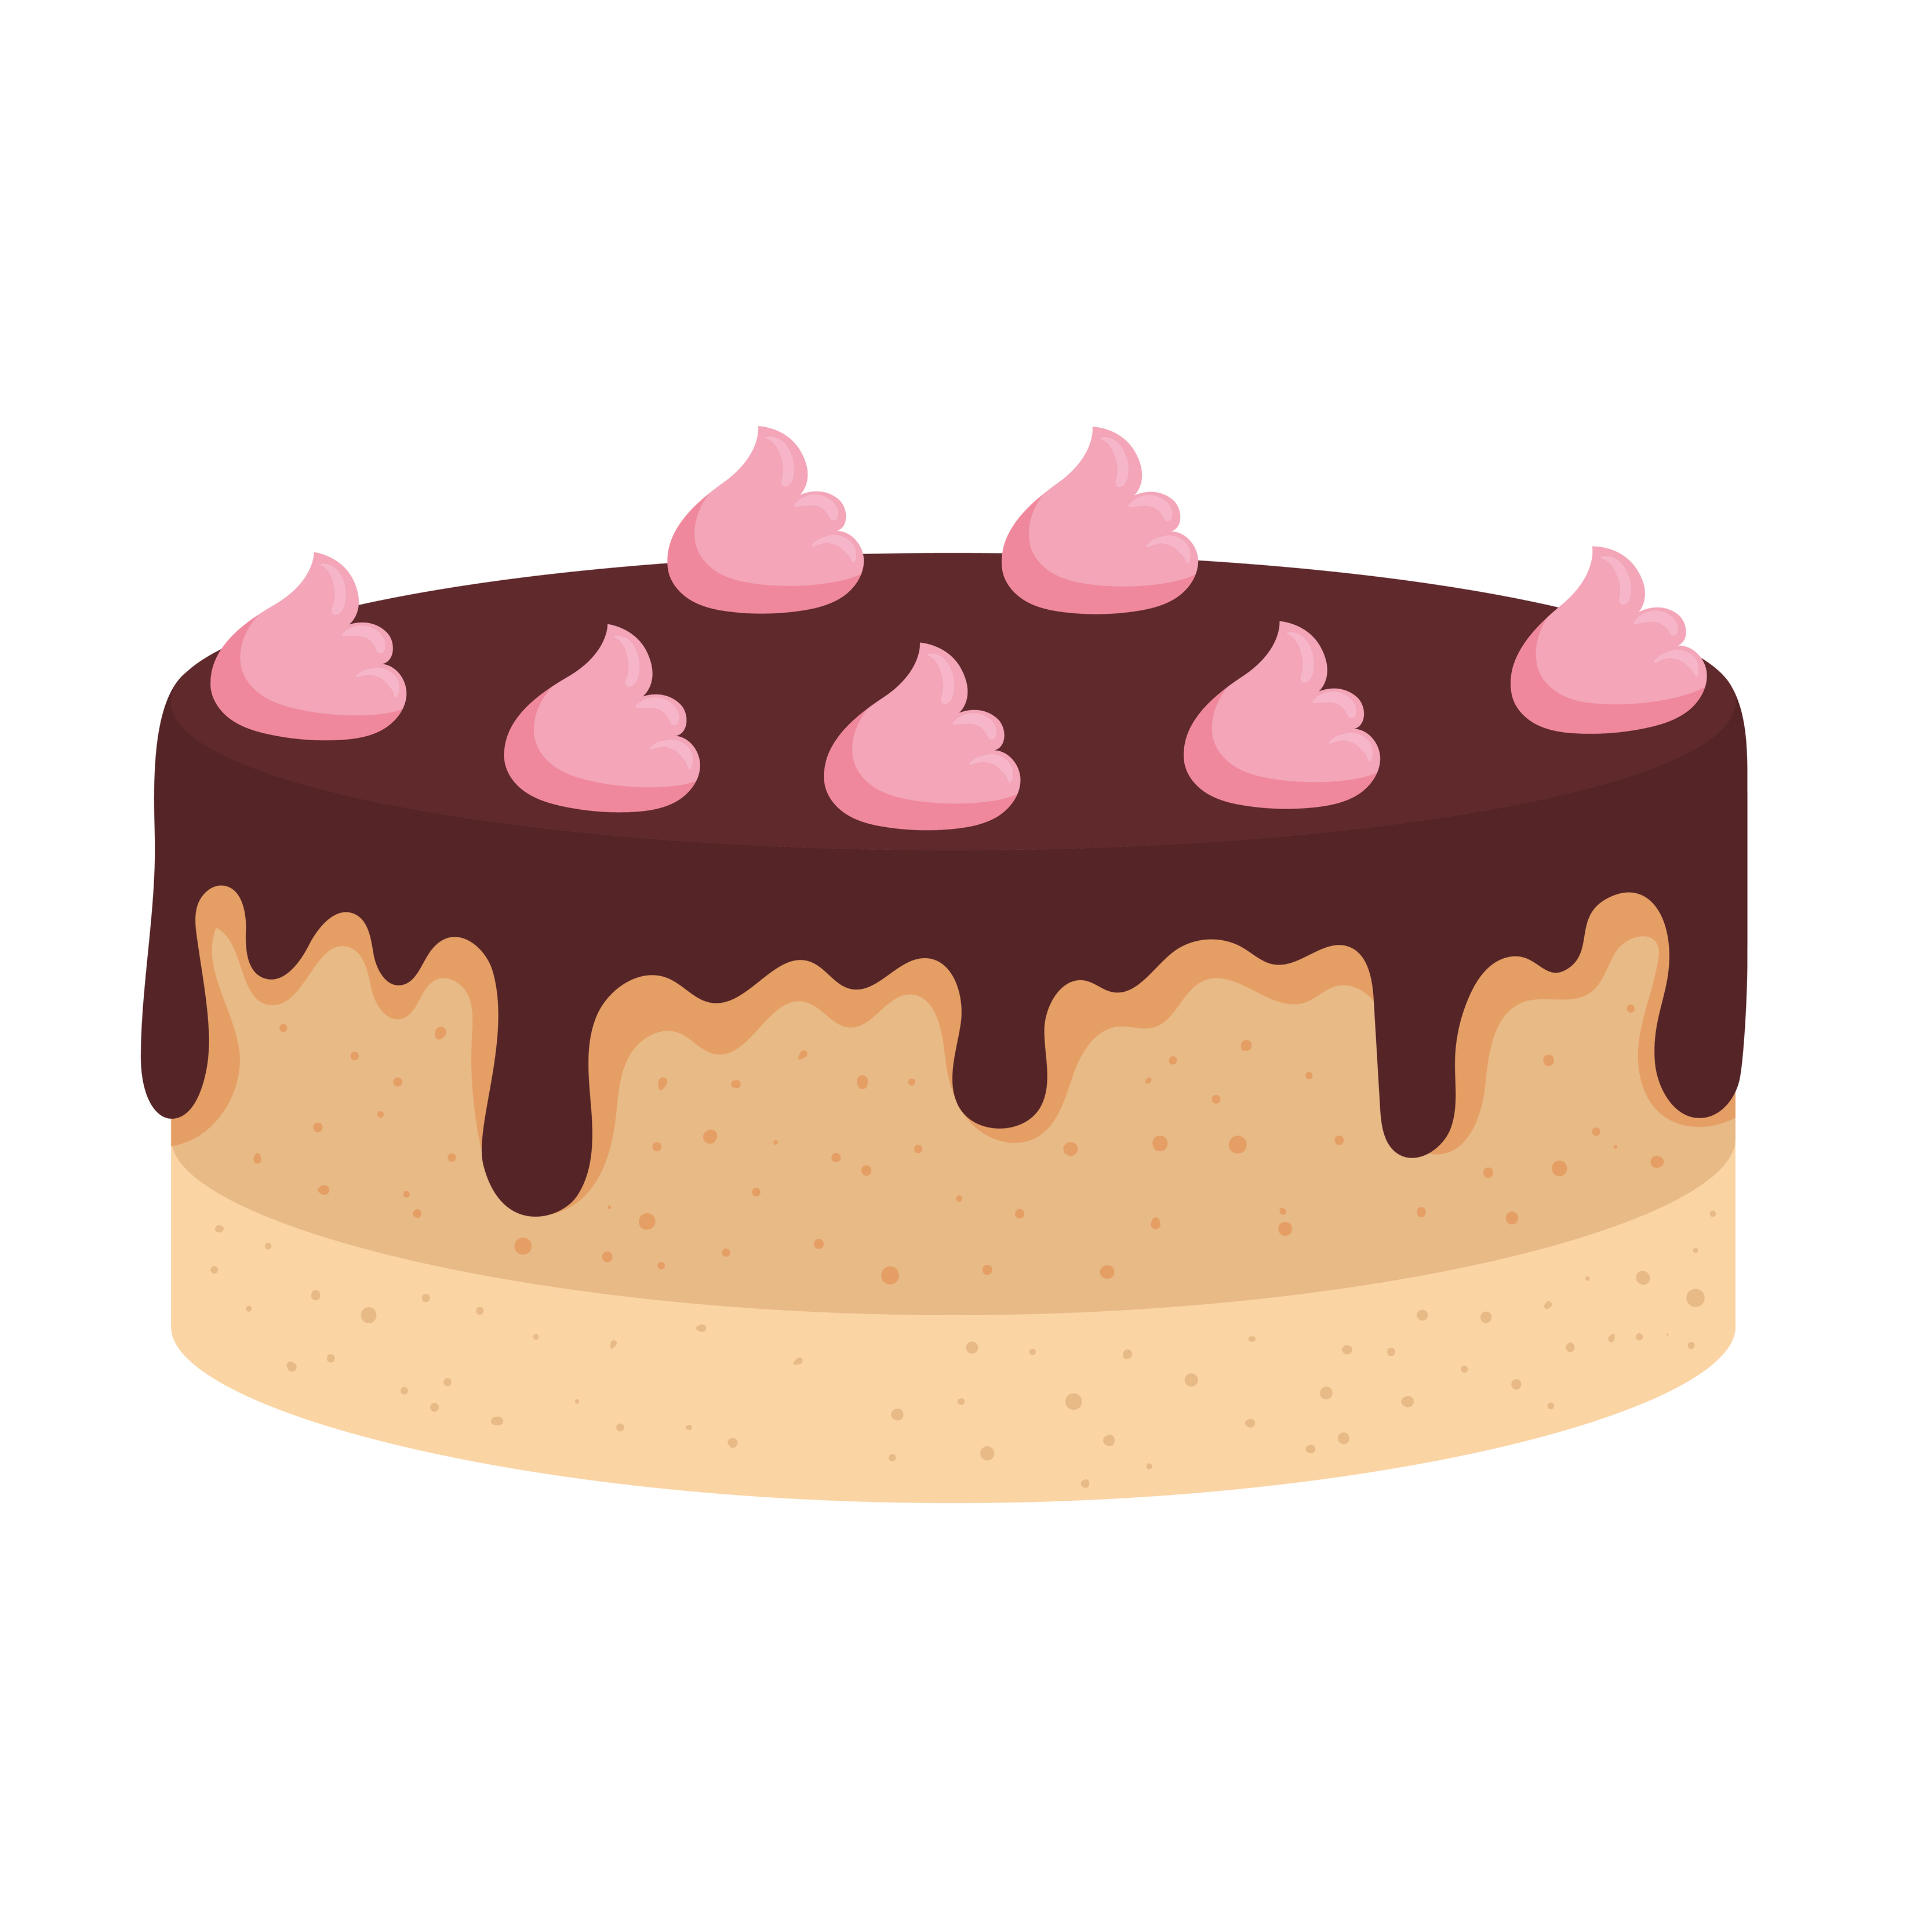 Bolo Aniversário Chocolate Desenho - Gráfico vetorial grátis no Pixabay -  Pixabay